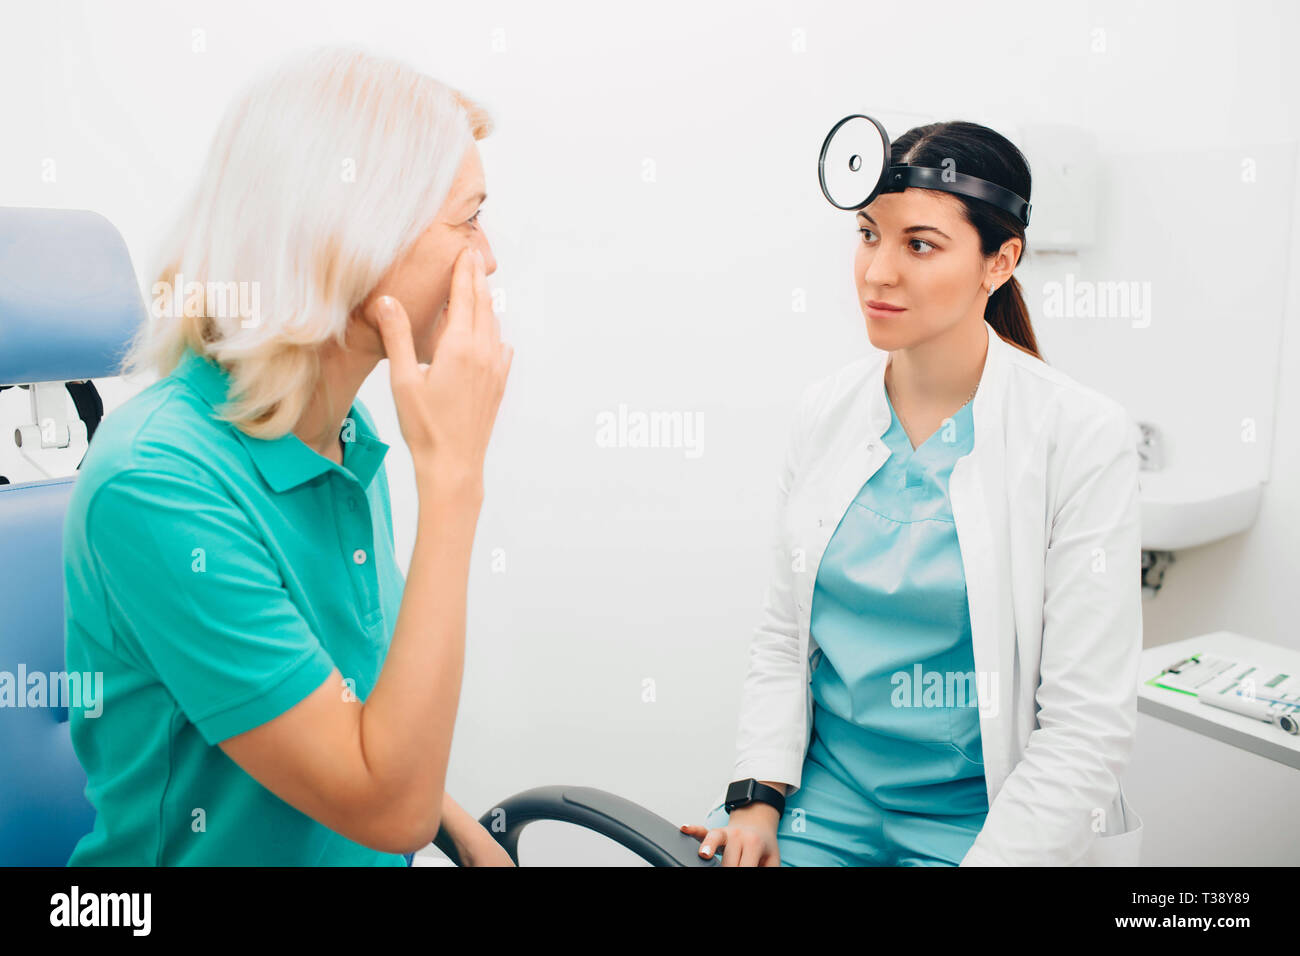 Der Arzt hört den Beschwerden des Patienten zu, während der Patient auf die Kieferhöhlen zeigt. Sinusitis, Symptome. Stockfoto